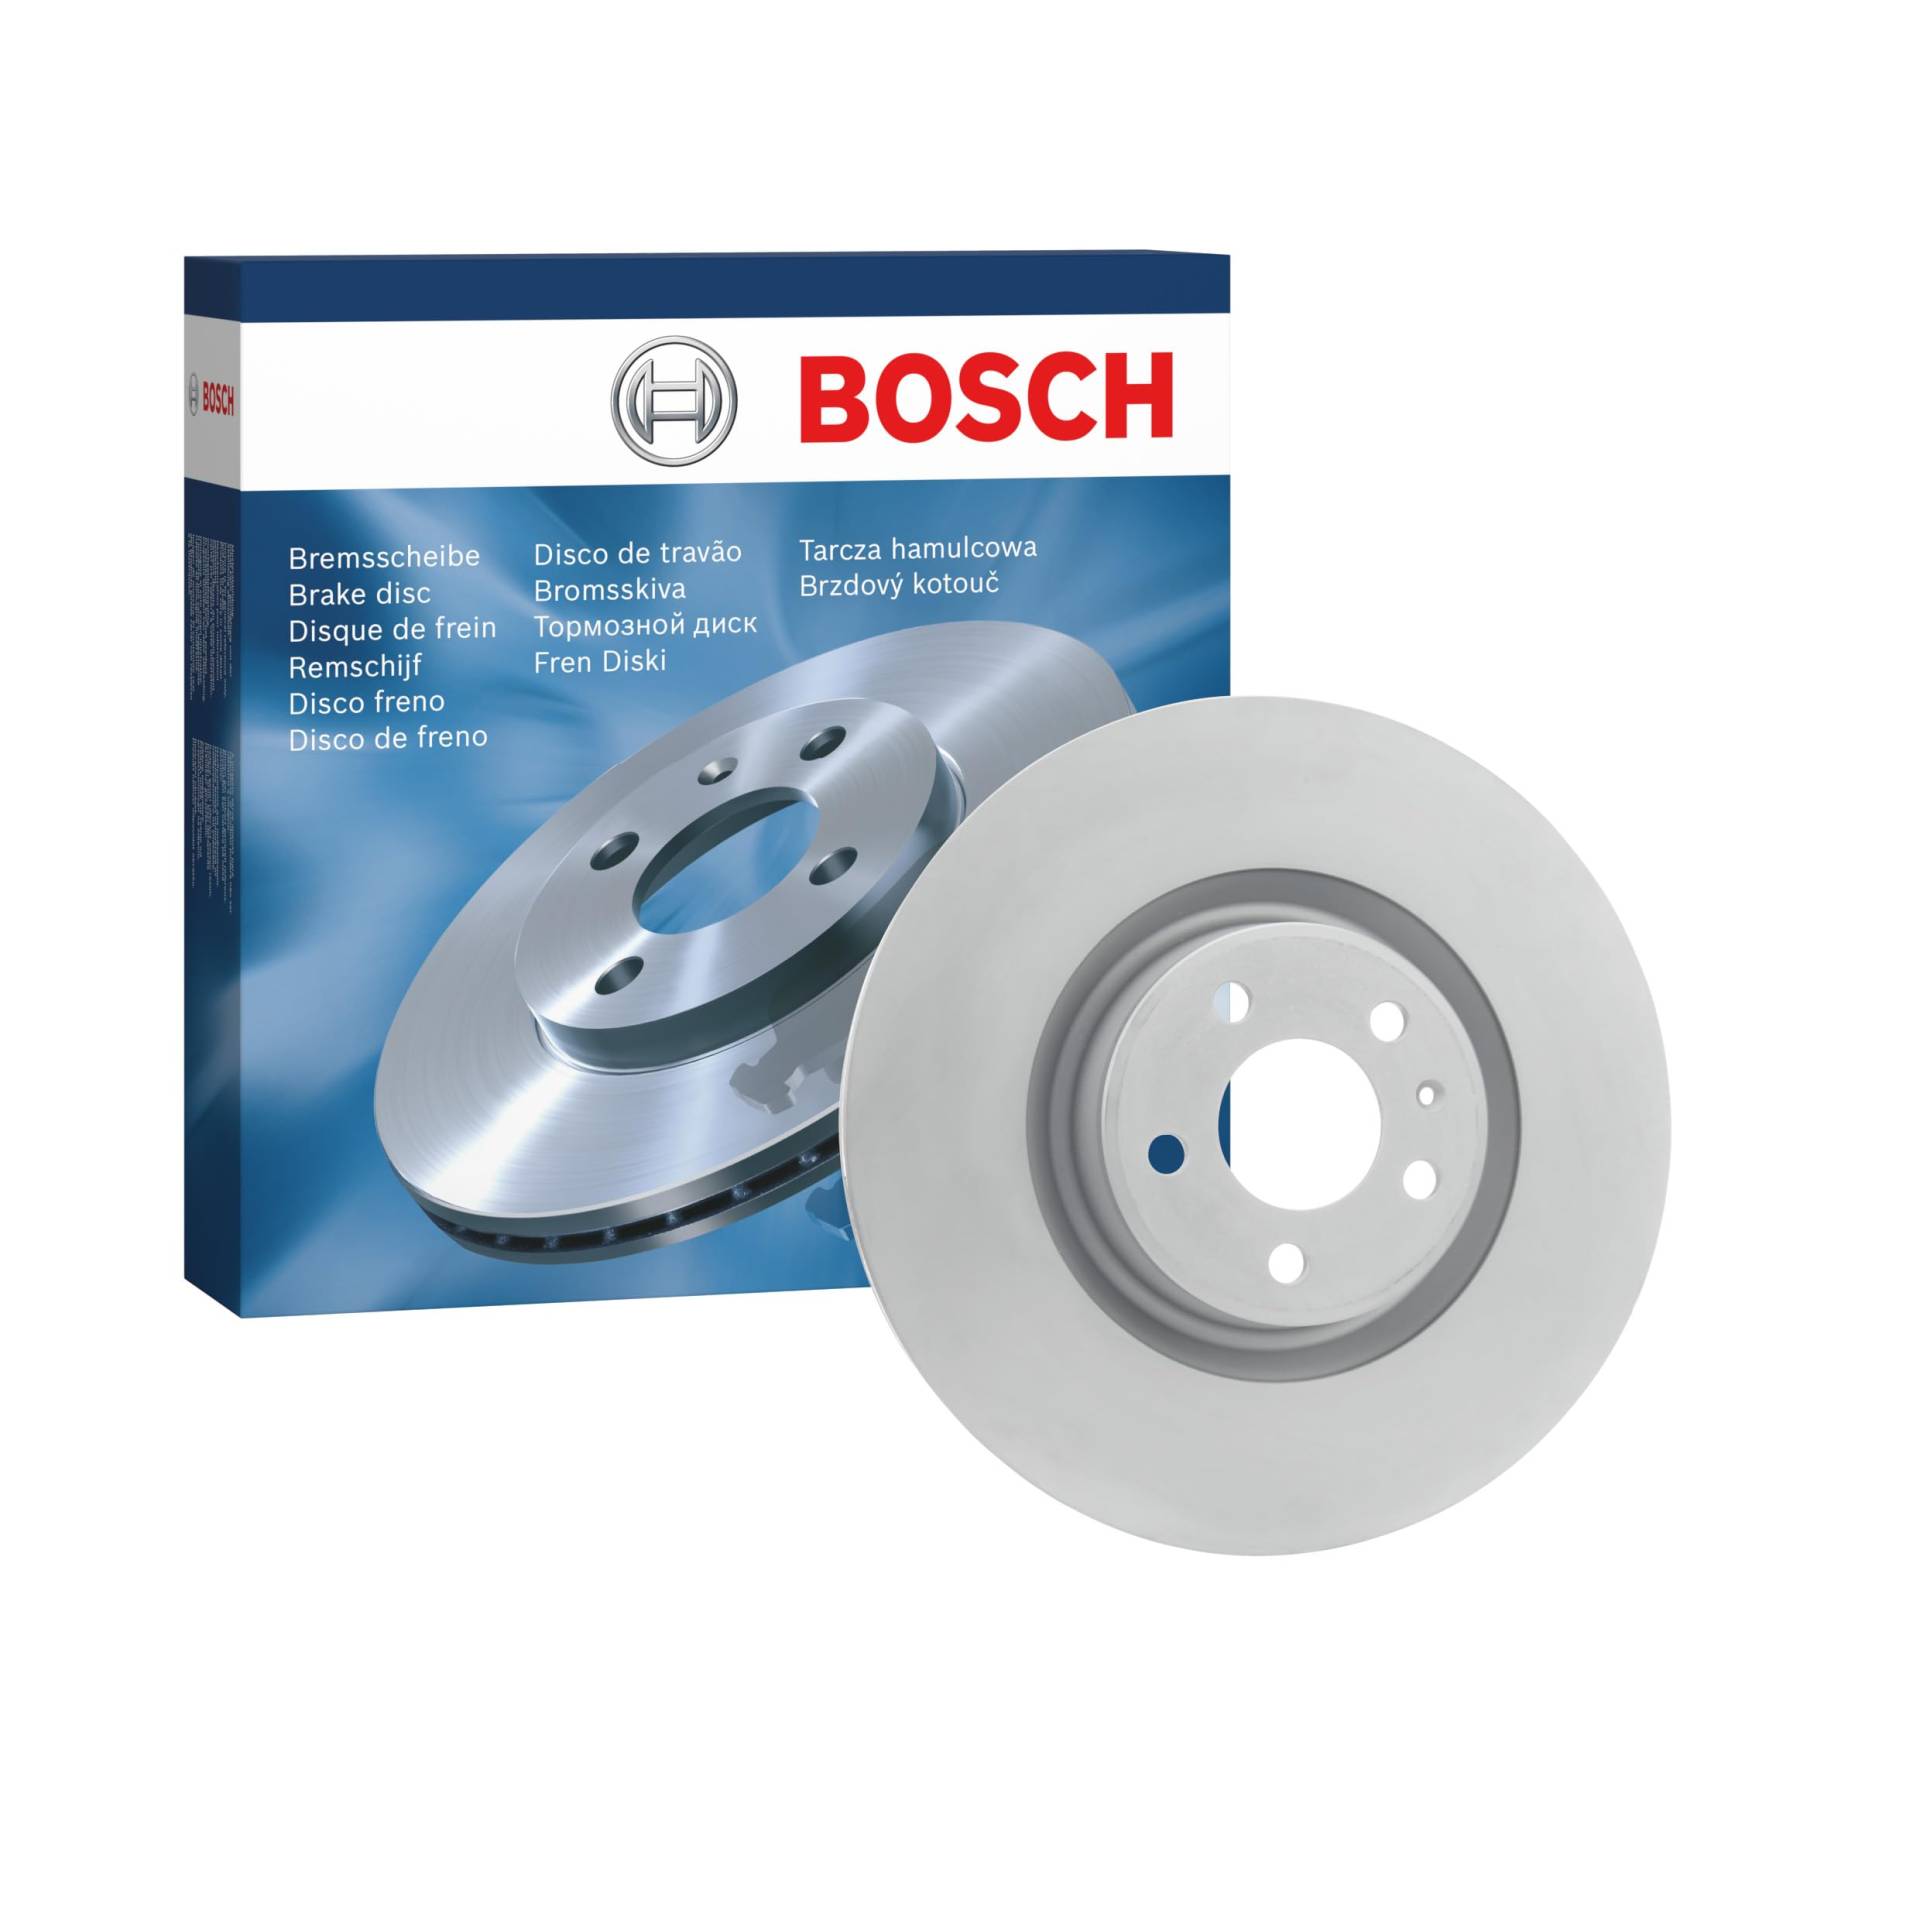 Bosch BD2640 Bremsscheiben - Vorderachse - ECE-R90 Zertifizierung - eine Bremsscheibe von Bosch Automotive